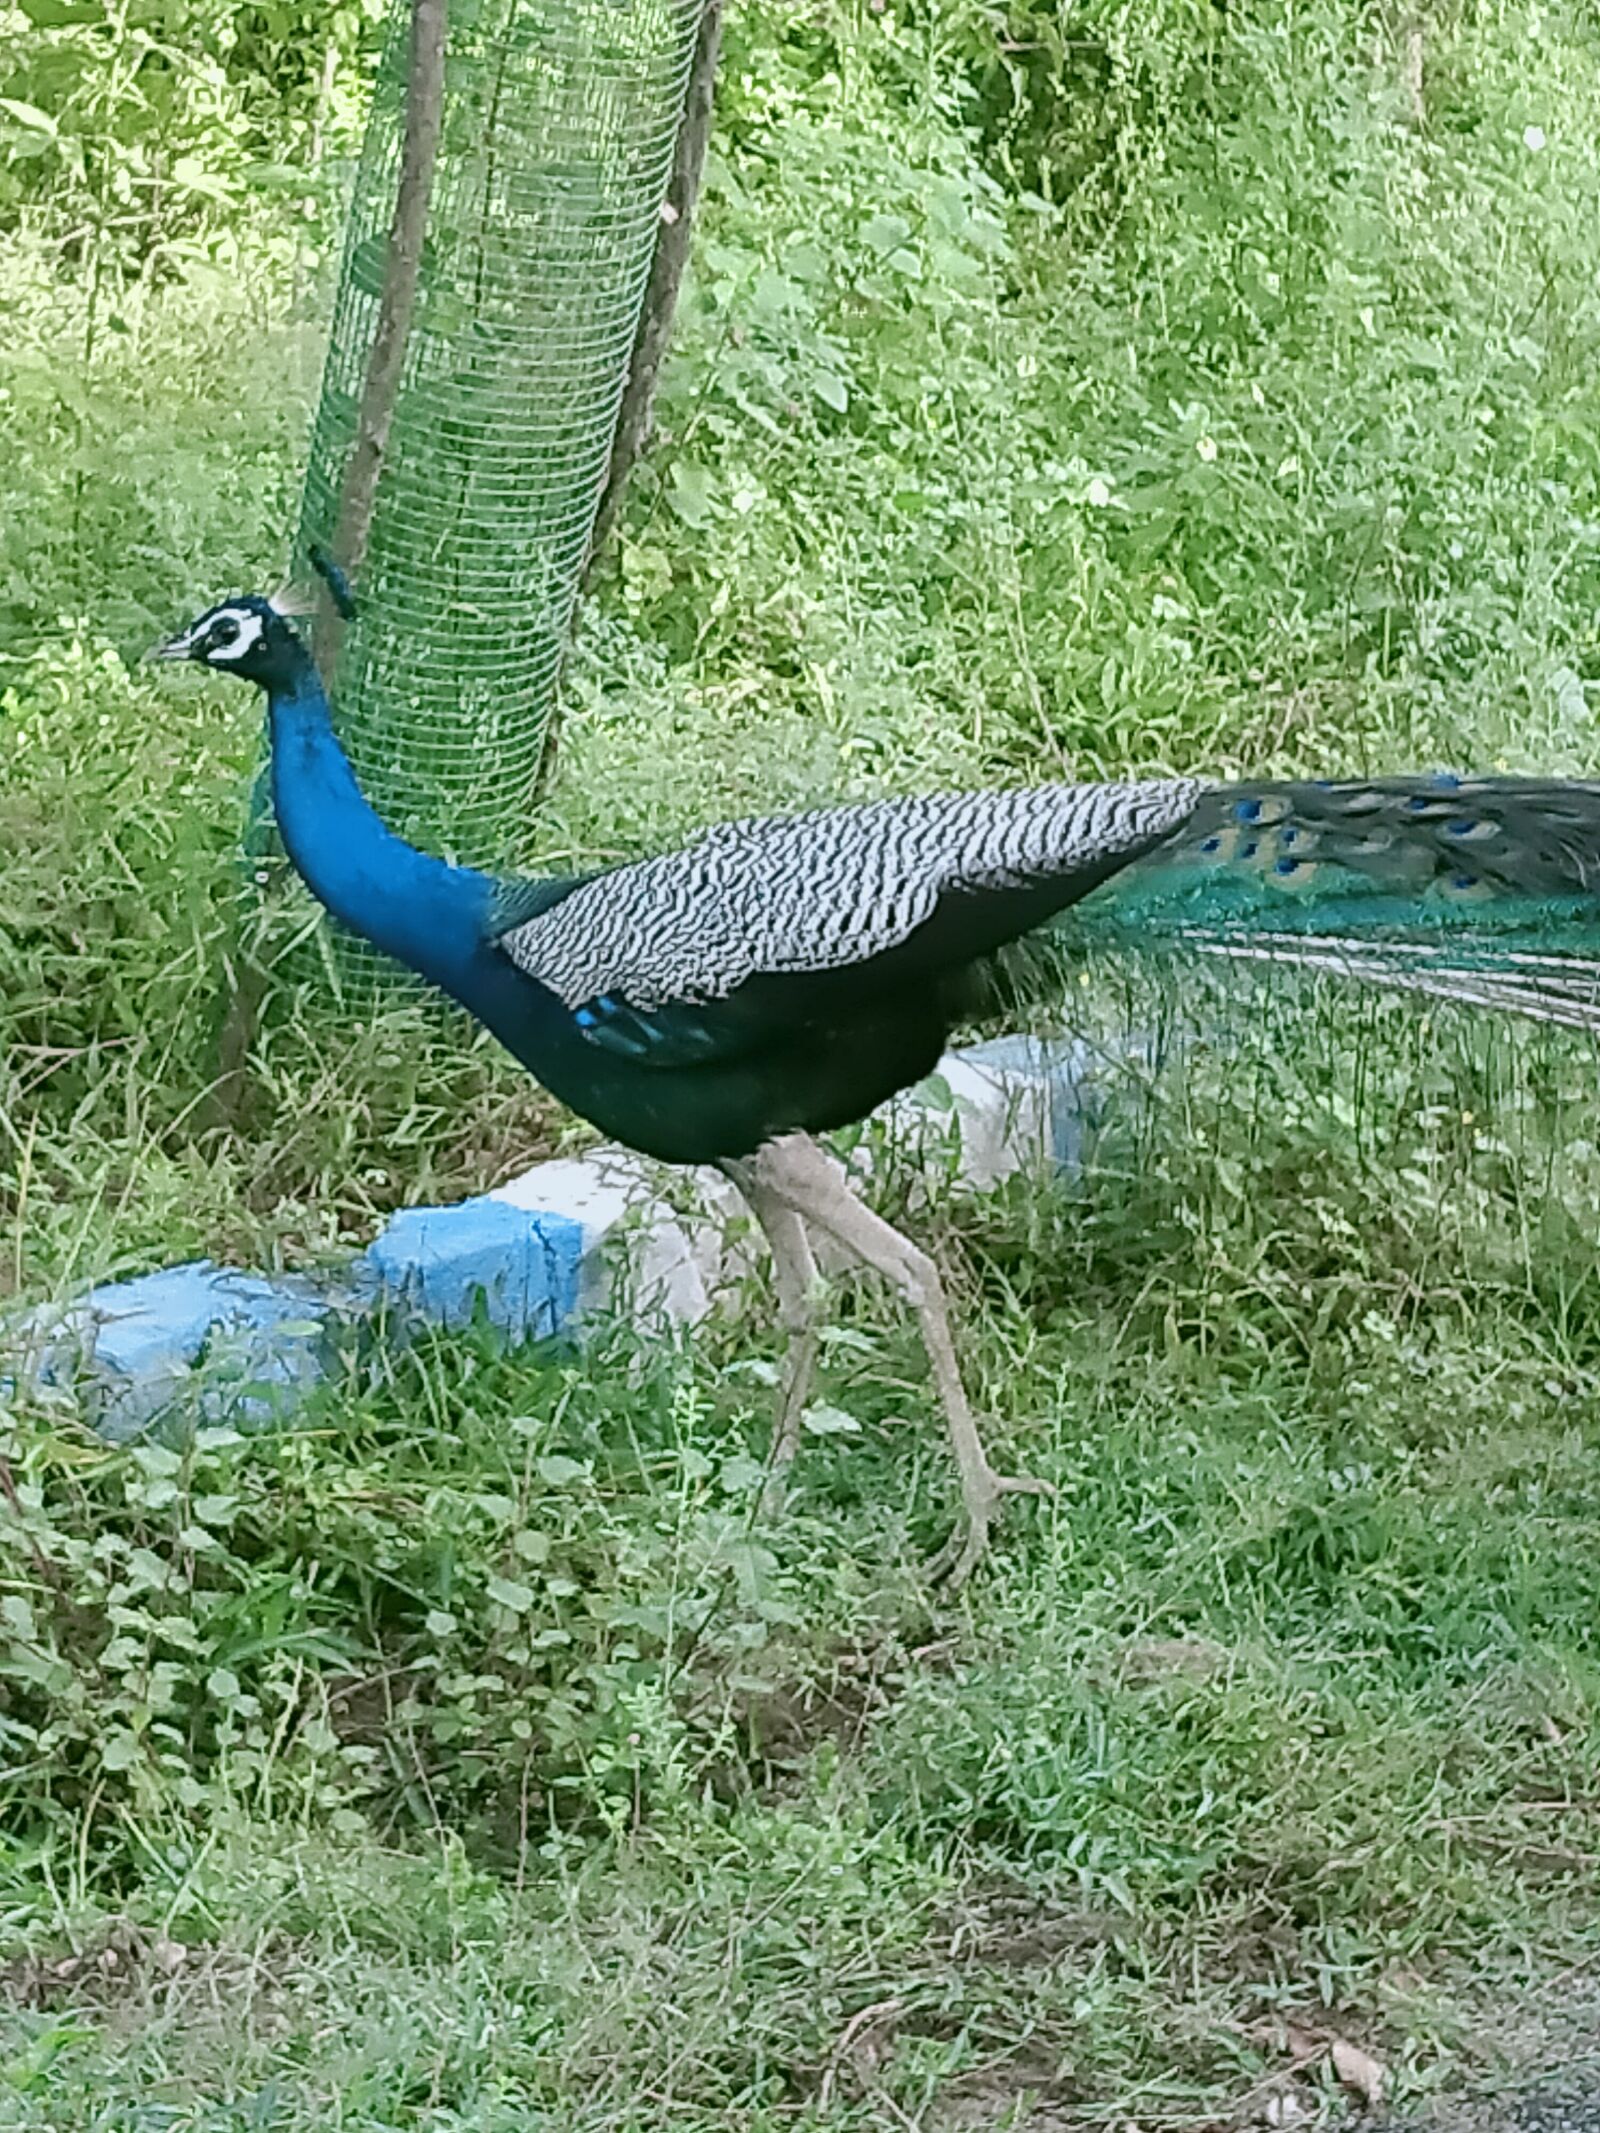 OPPO A5 2020 sample photo. Birds, peacock, jungle photography